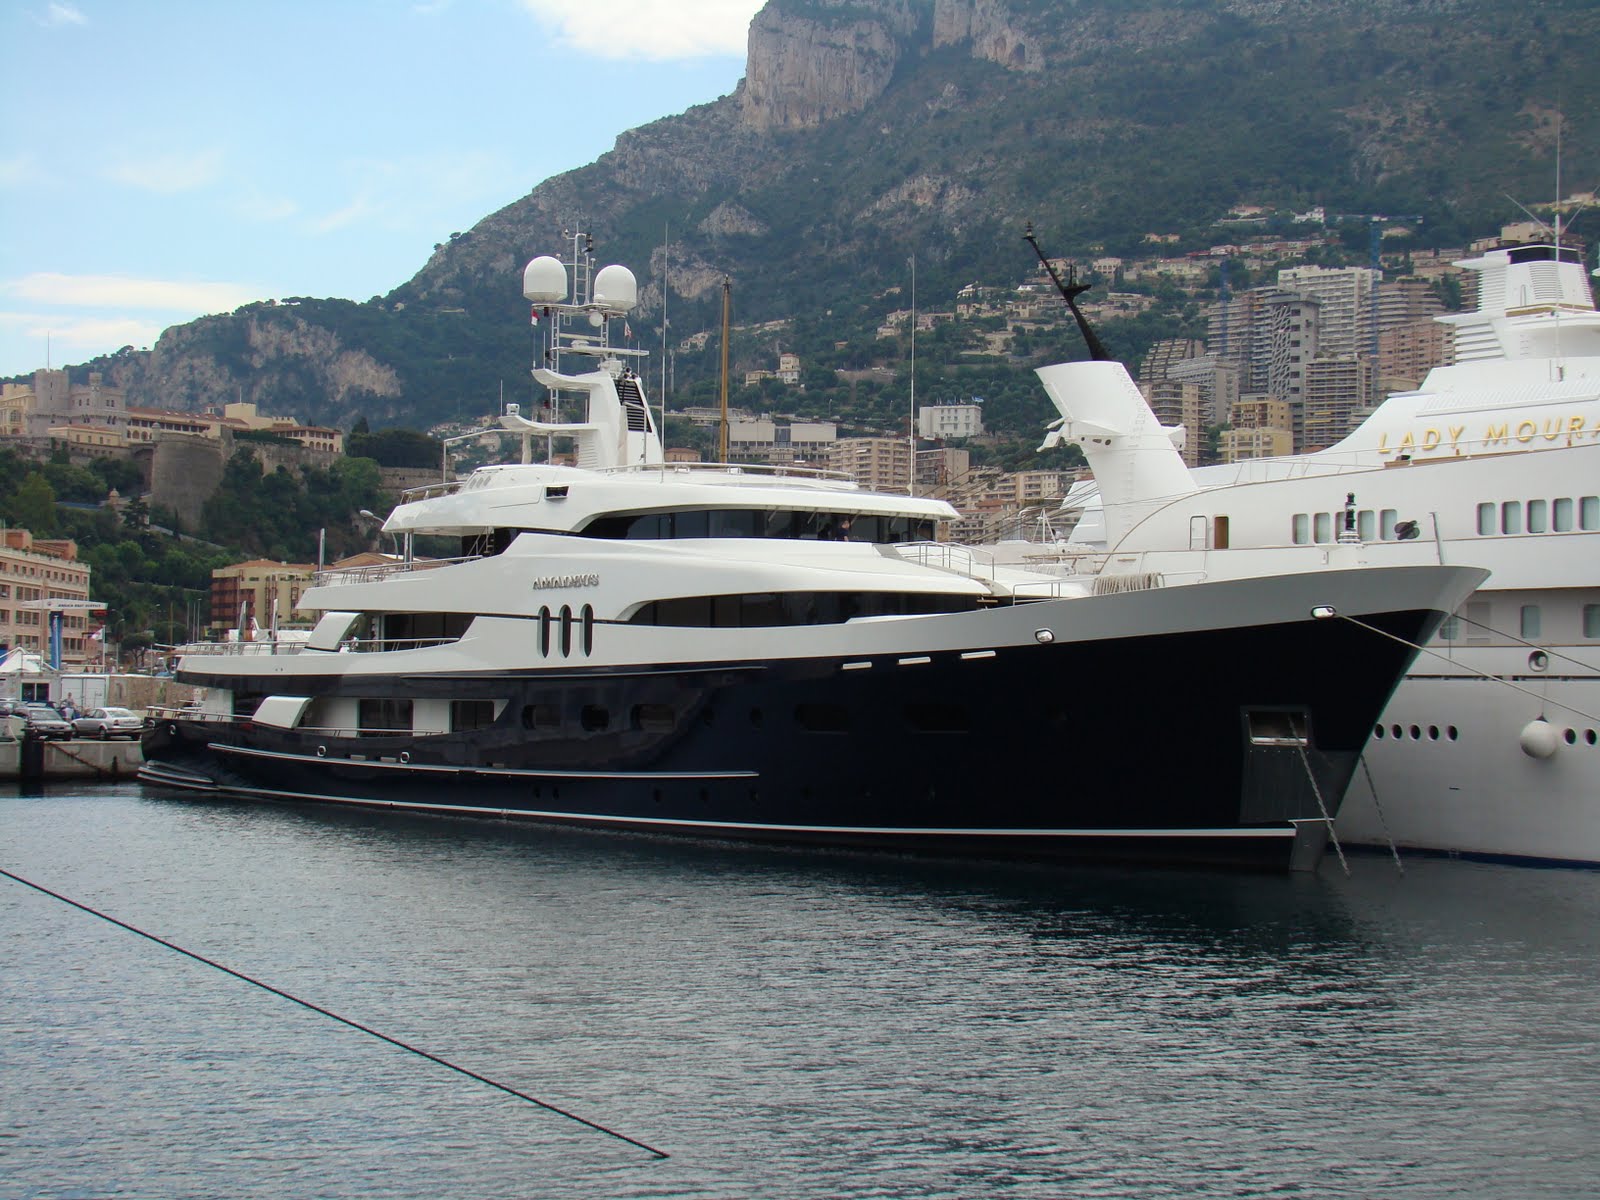 Le méga-yacht de Bernard Arnault, beaucoup trop grand pour le port